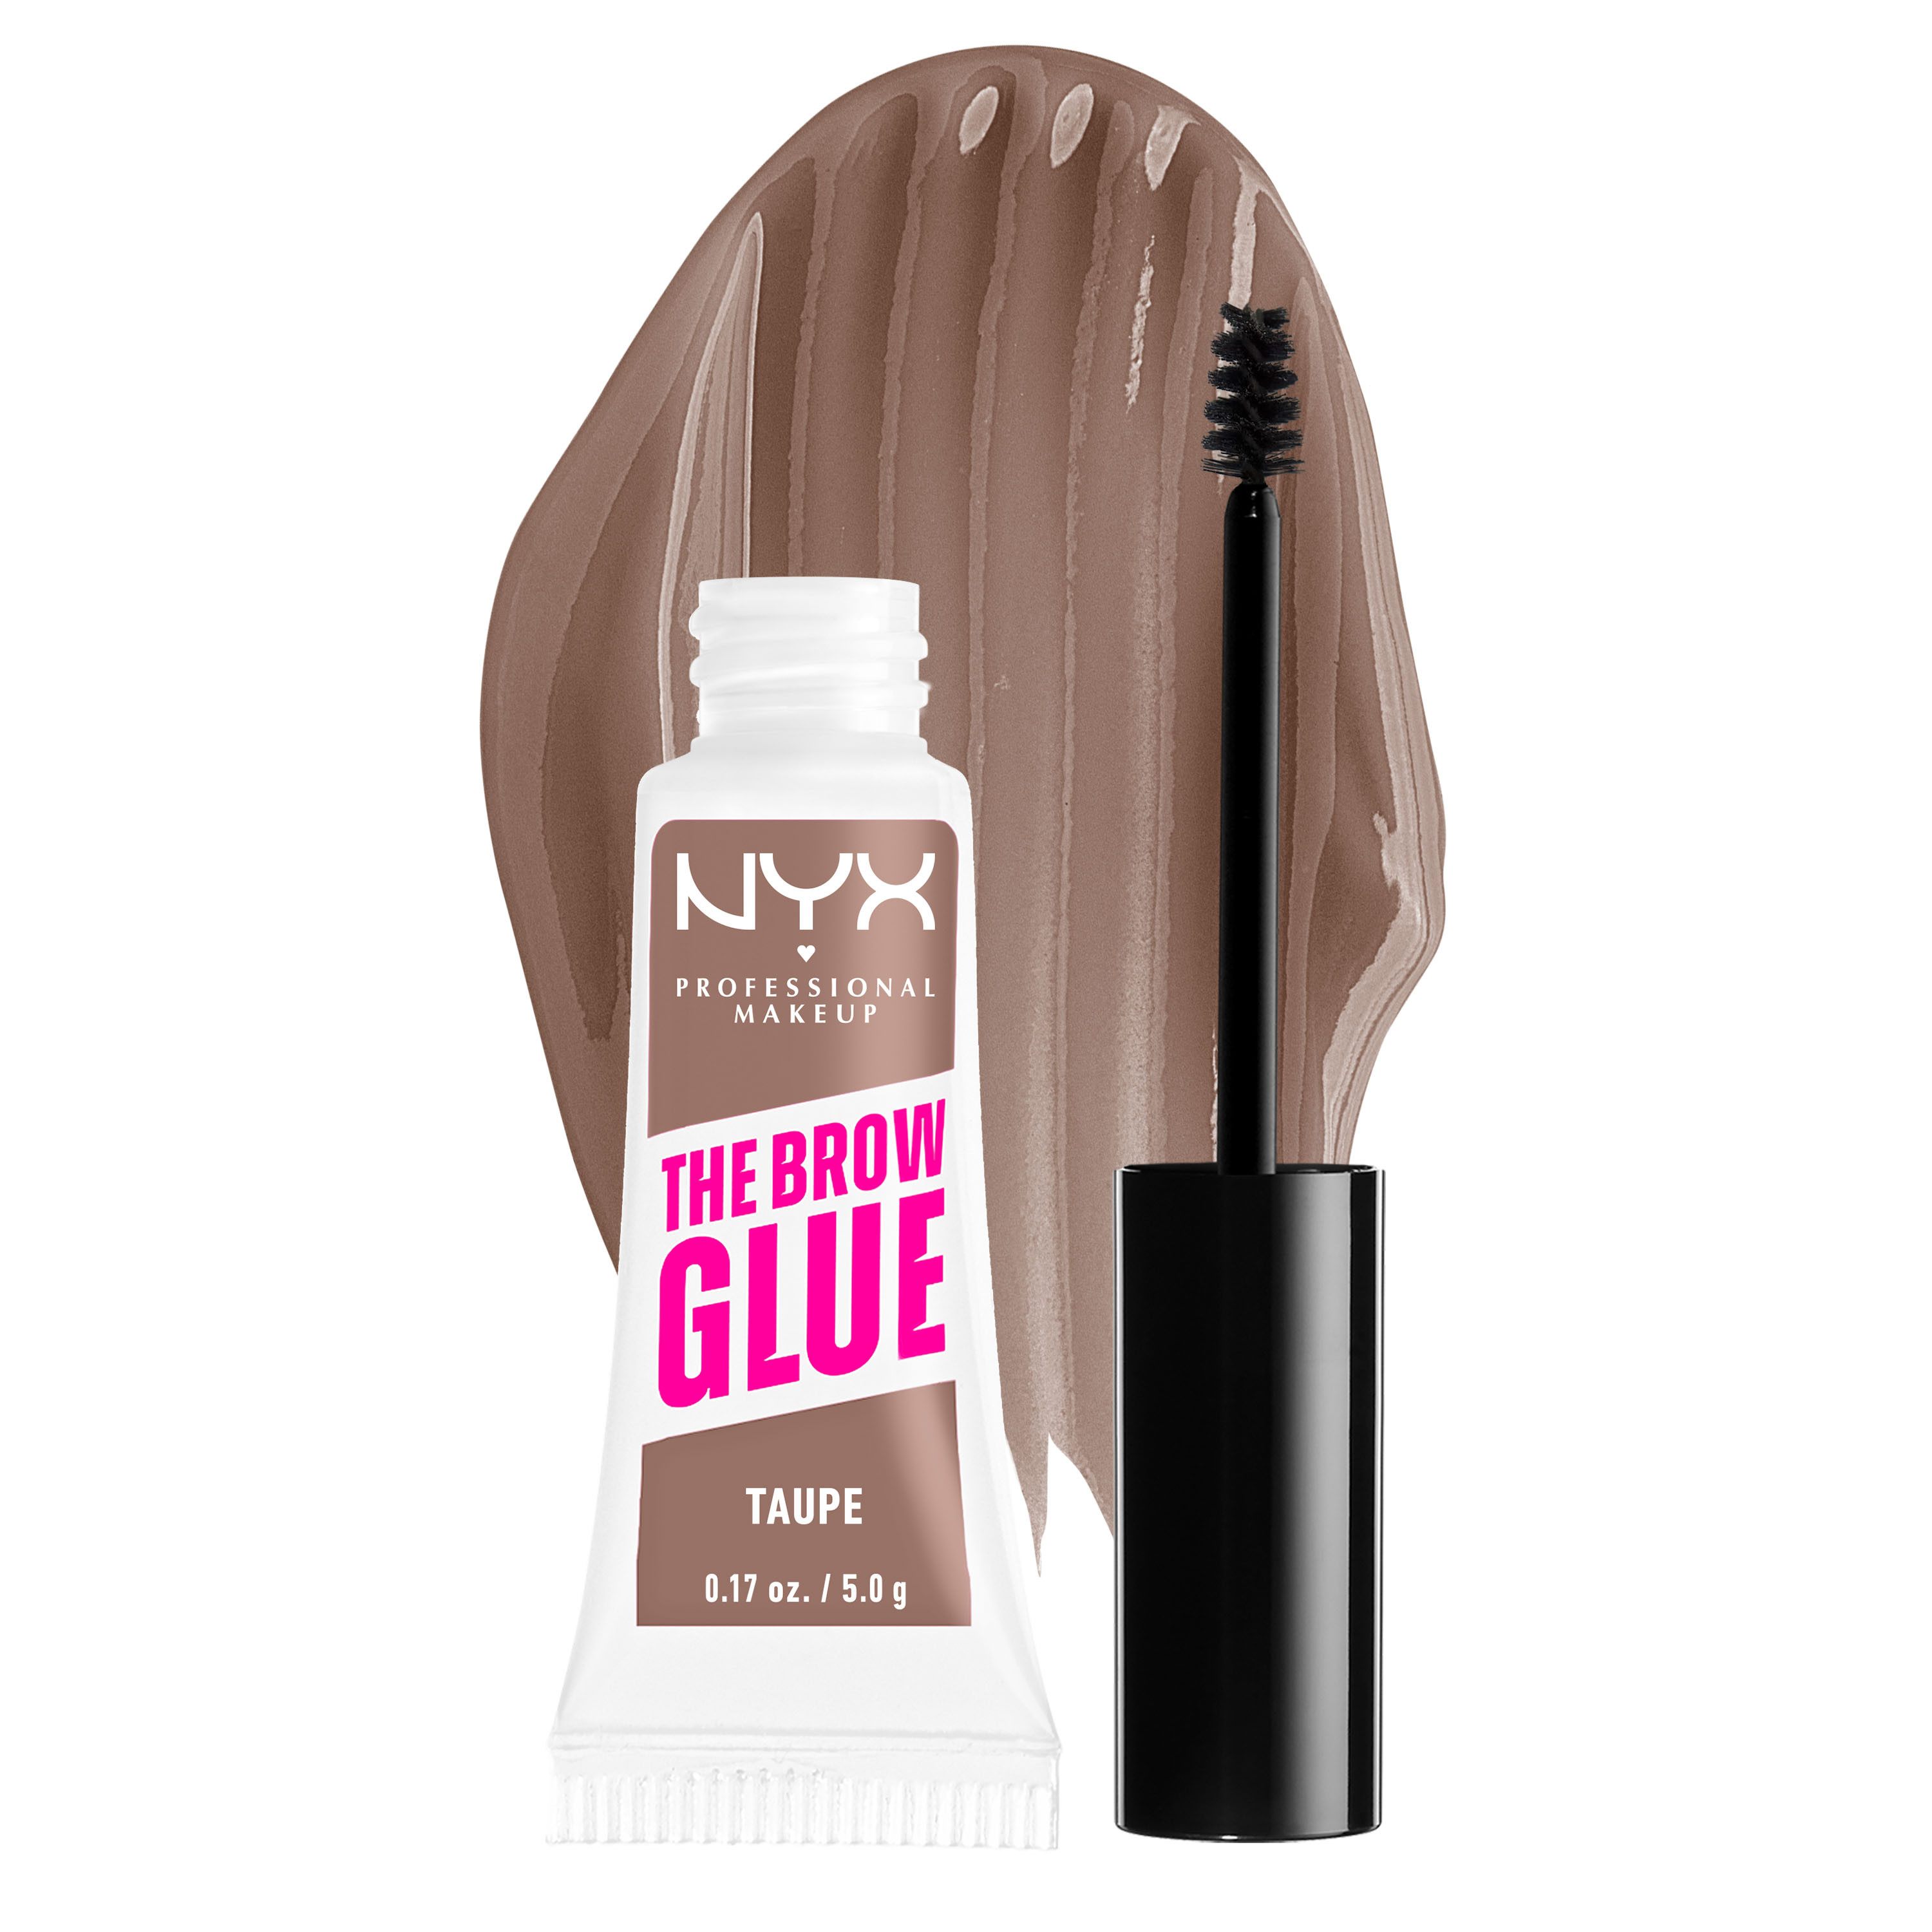 NYX Professional Makeup - NYX Professional Makeup The Brow Glue: Fija tus cejas en su lugar con este gel fijador, ideal para unas cejas perfectas en tu look de belleza. Logra unas cejas llenas y definidas que se mantendrán impecables durante todo el día.